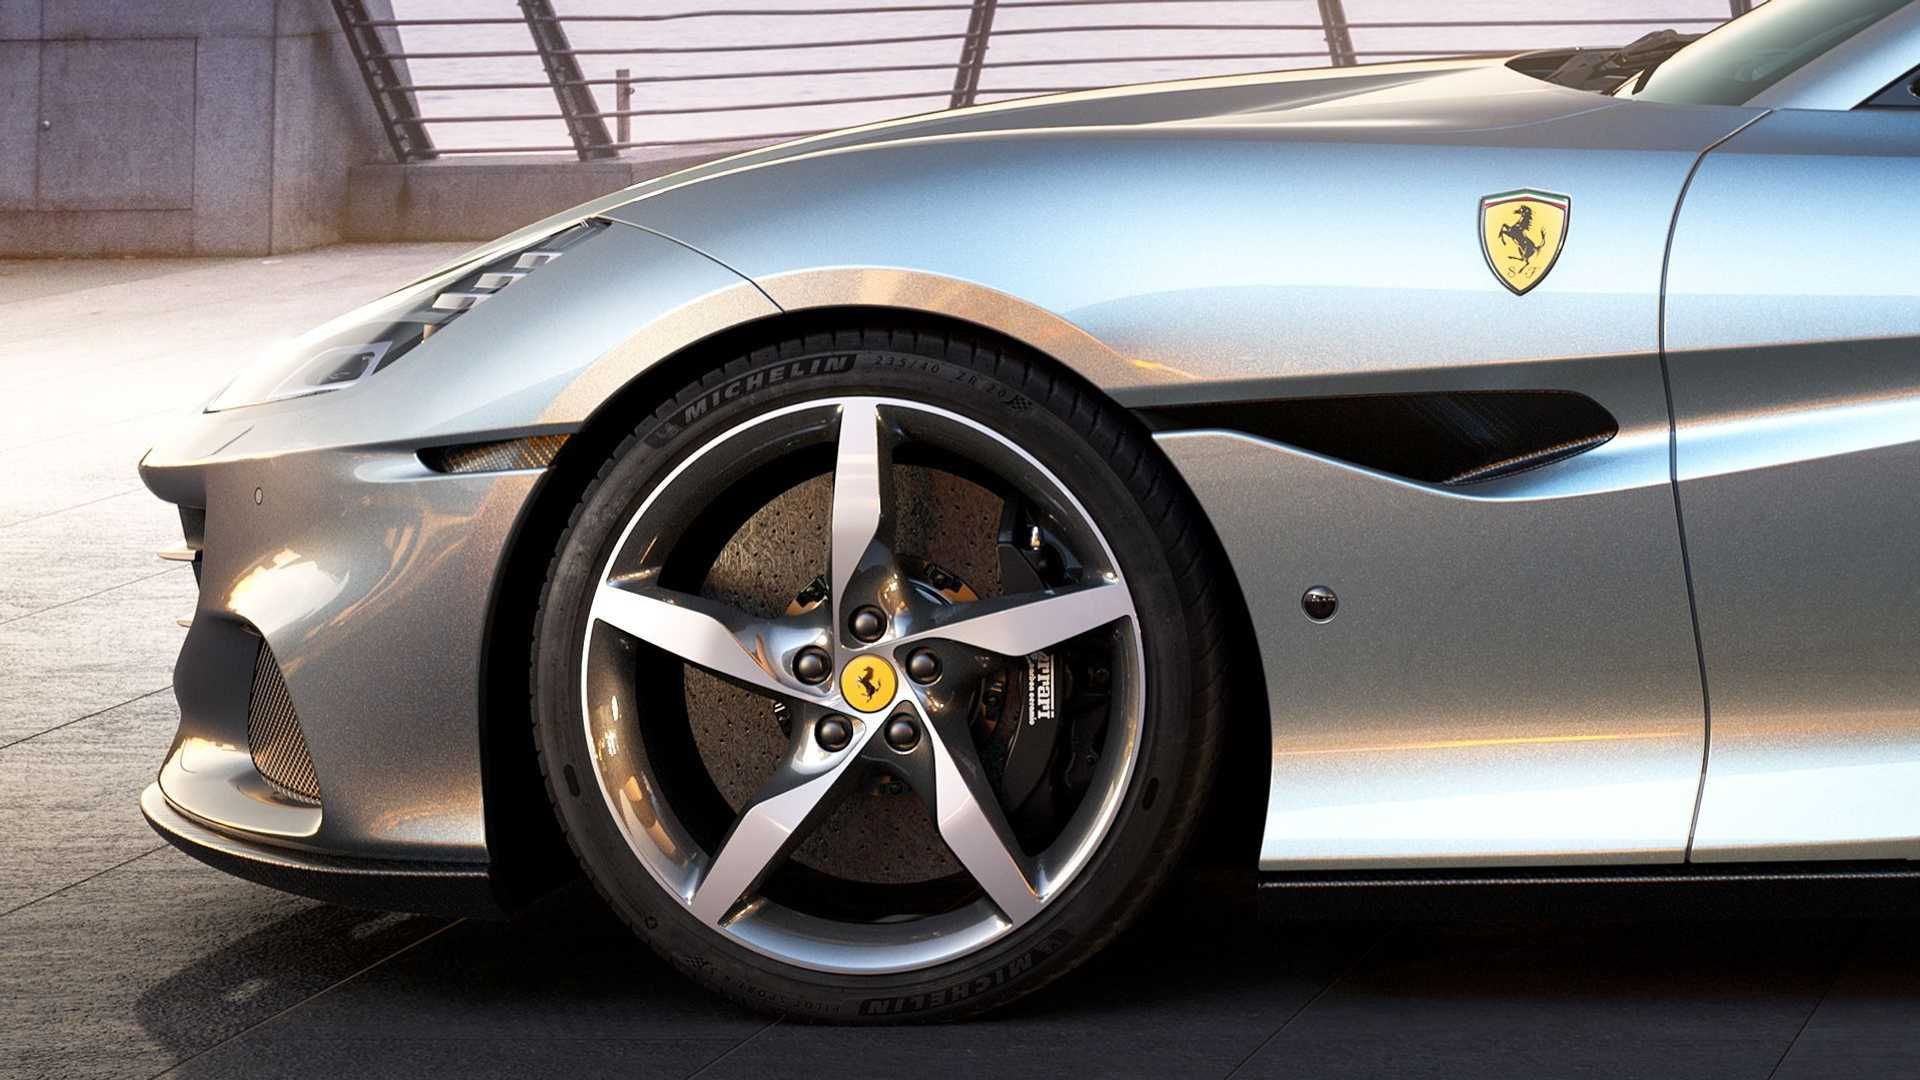 نمای چرخ جلو خودرو روباز فراری پورتوفینو ام / Ferrari Portofino M نقره ای رنگ